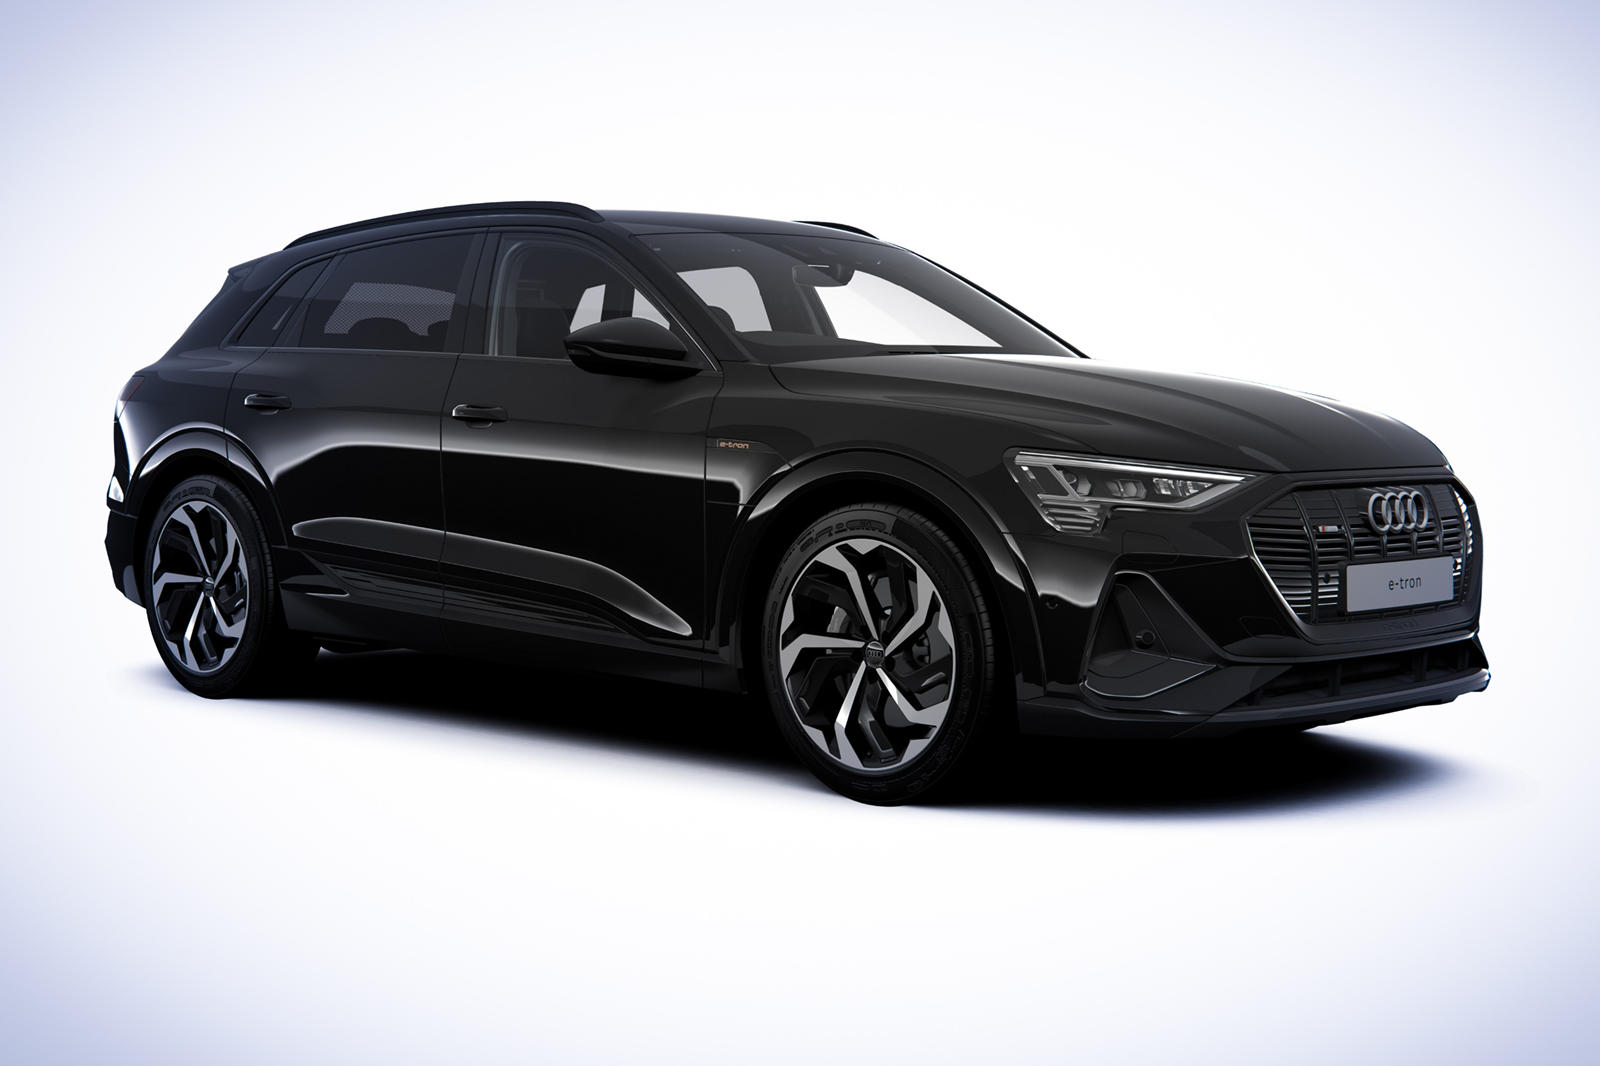 Audi e tron black edition